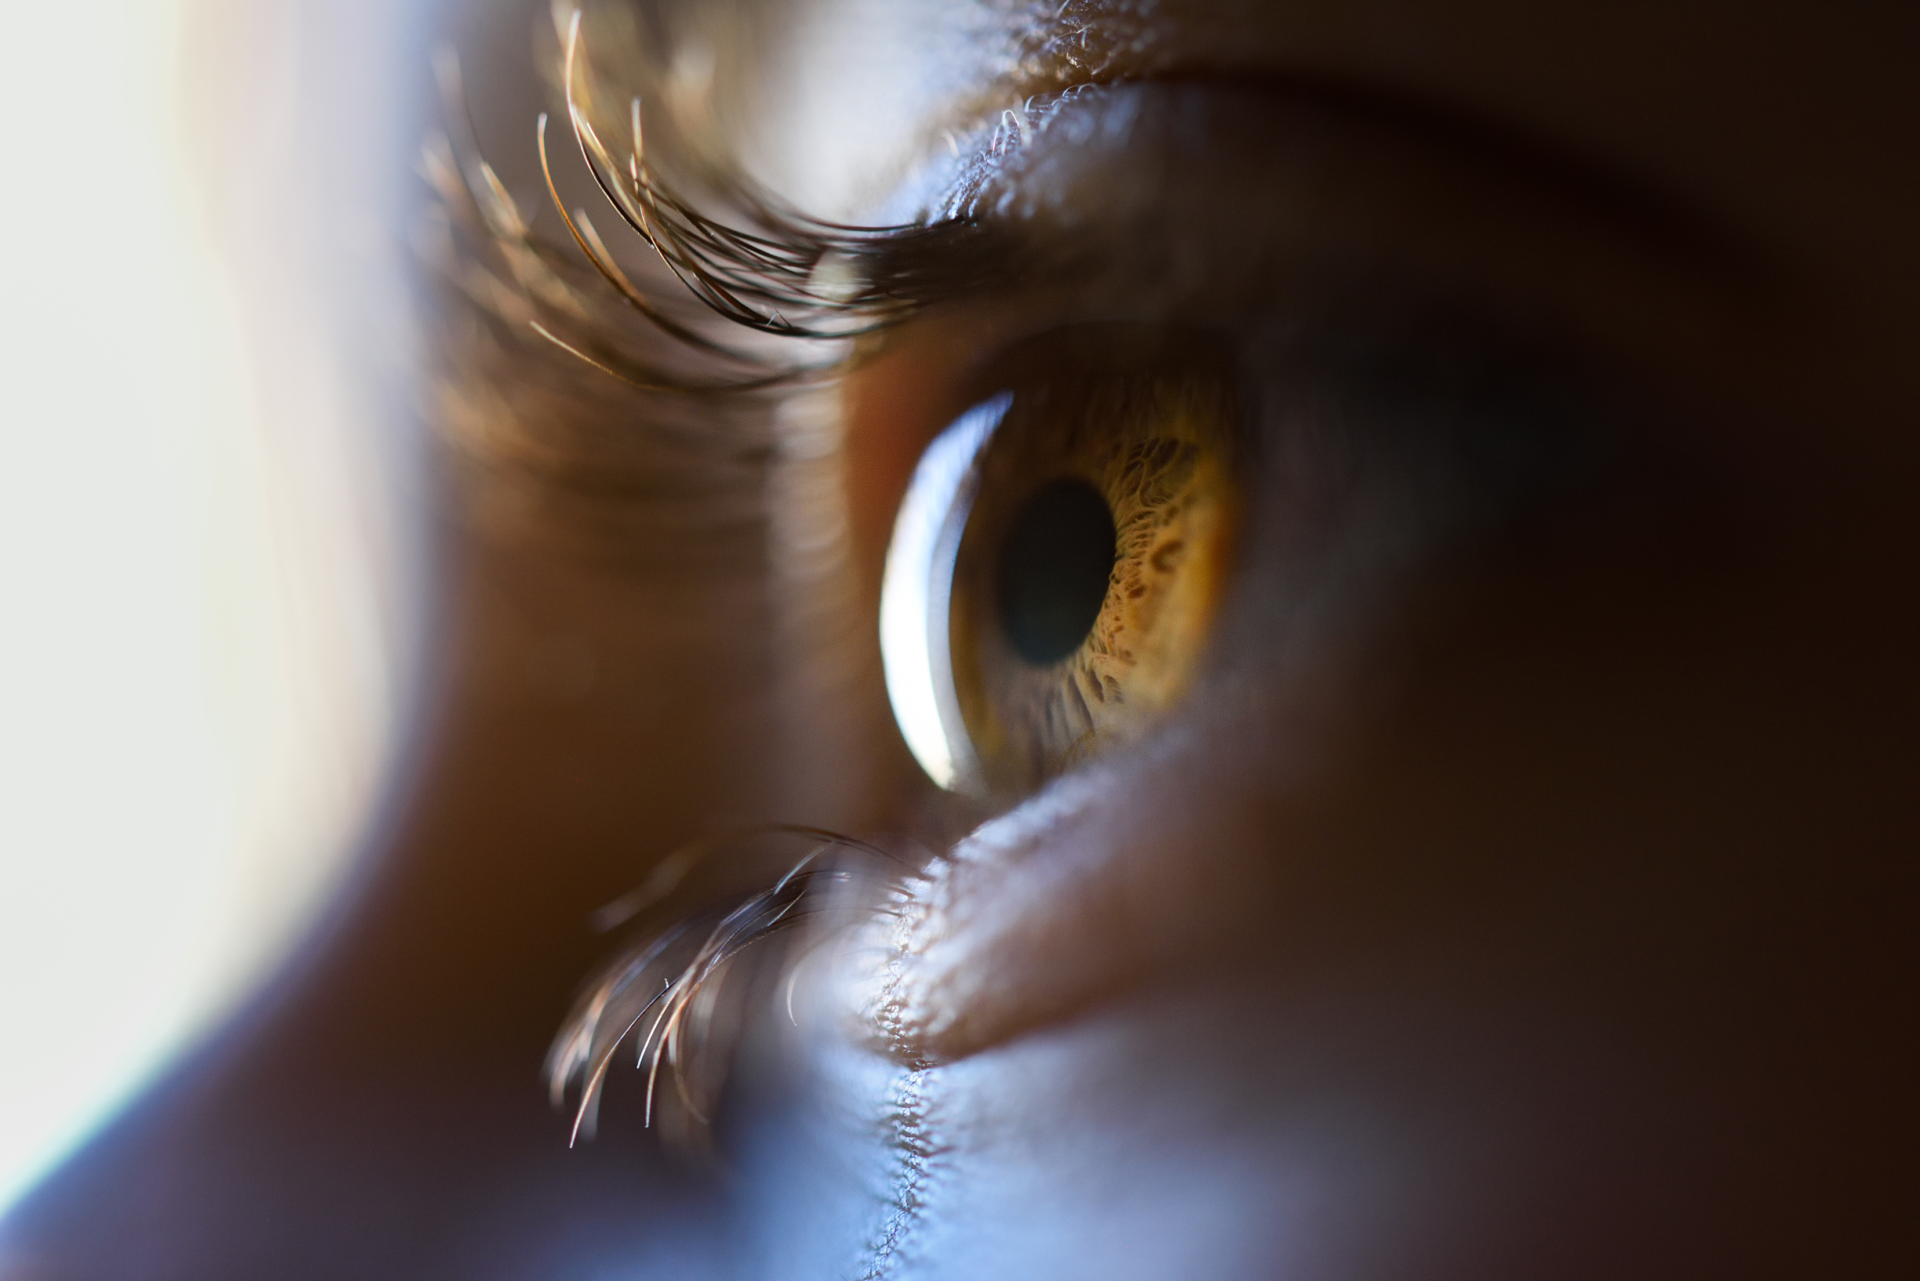 Laser treatment close up image of eye